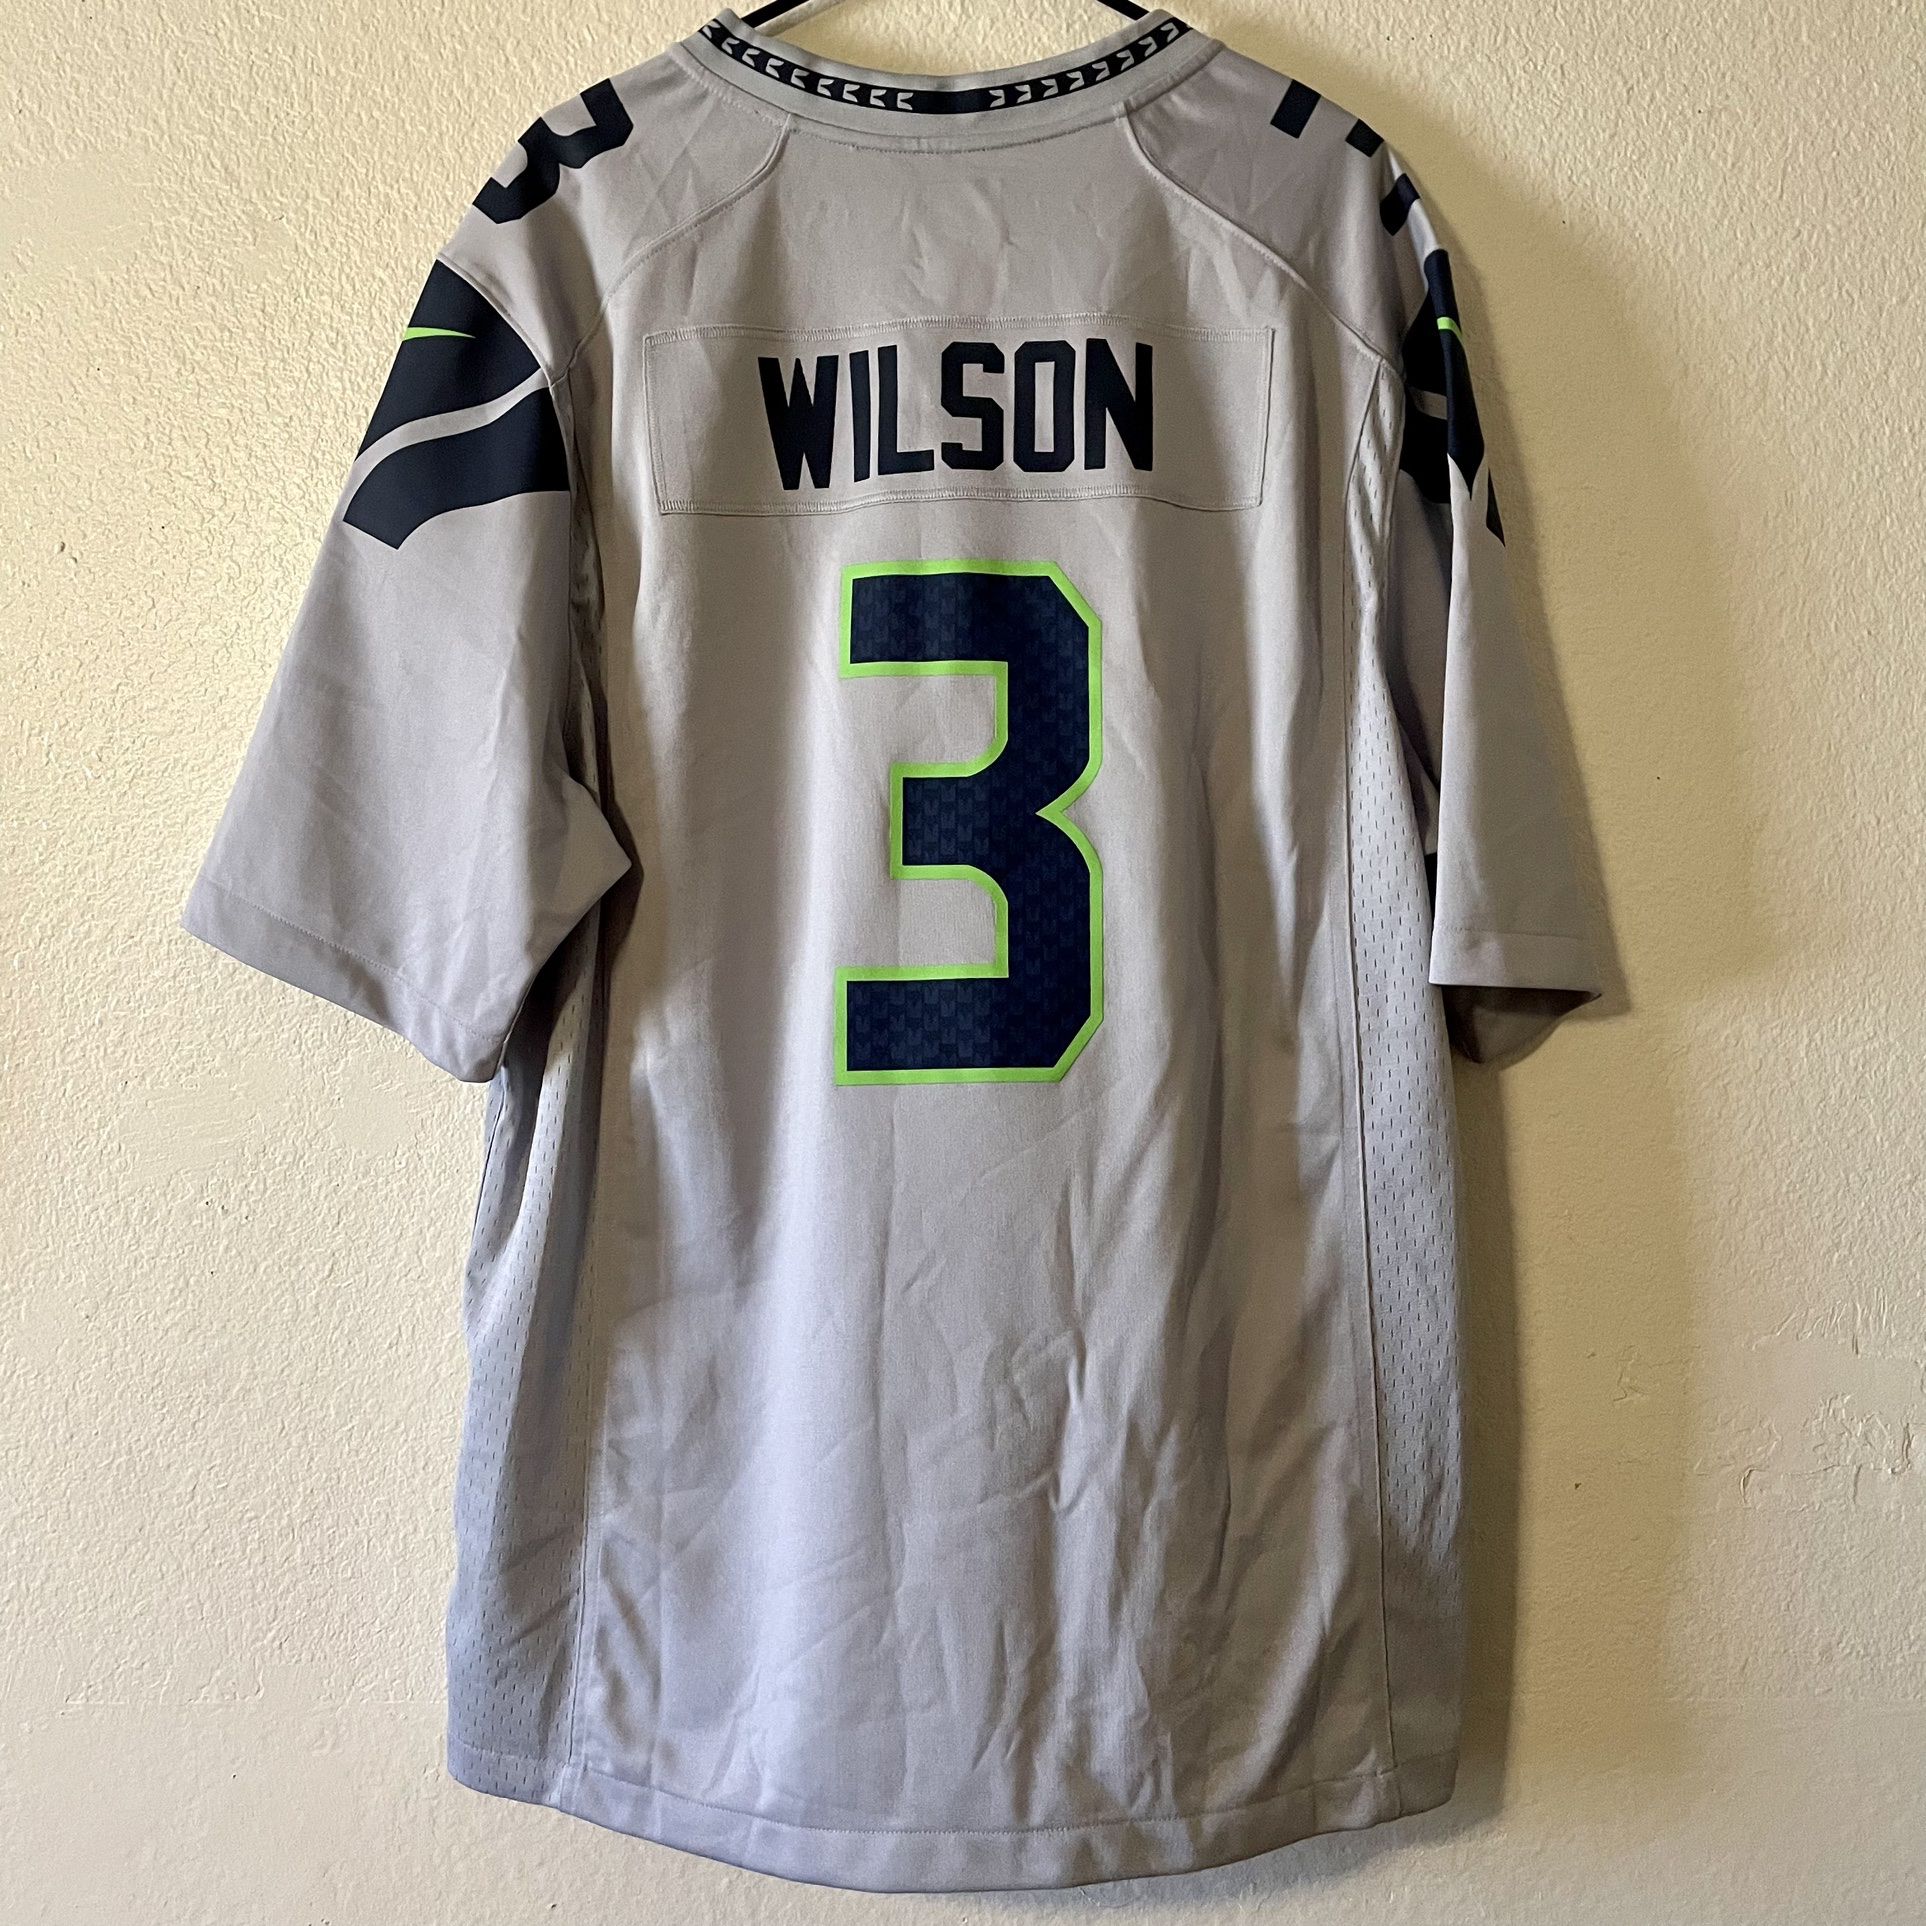 Nike NFL Seahawks Wilson Alt Jersey (XL) for Sale in Eleven Mile, AZ -  OfferUp